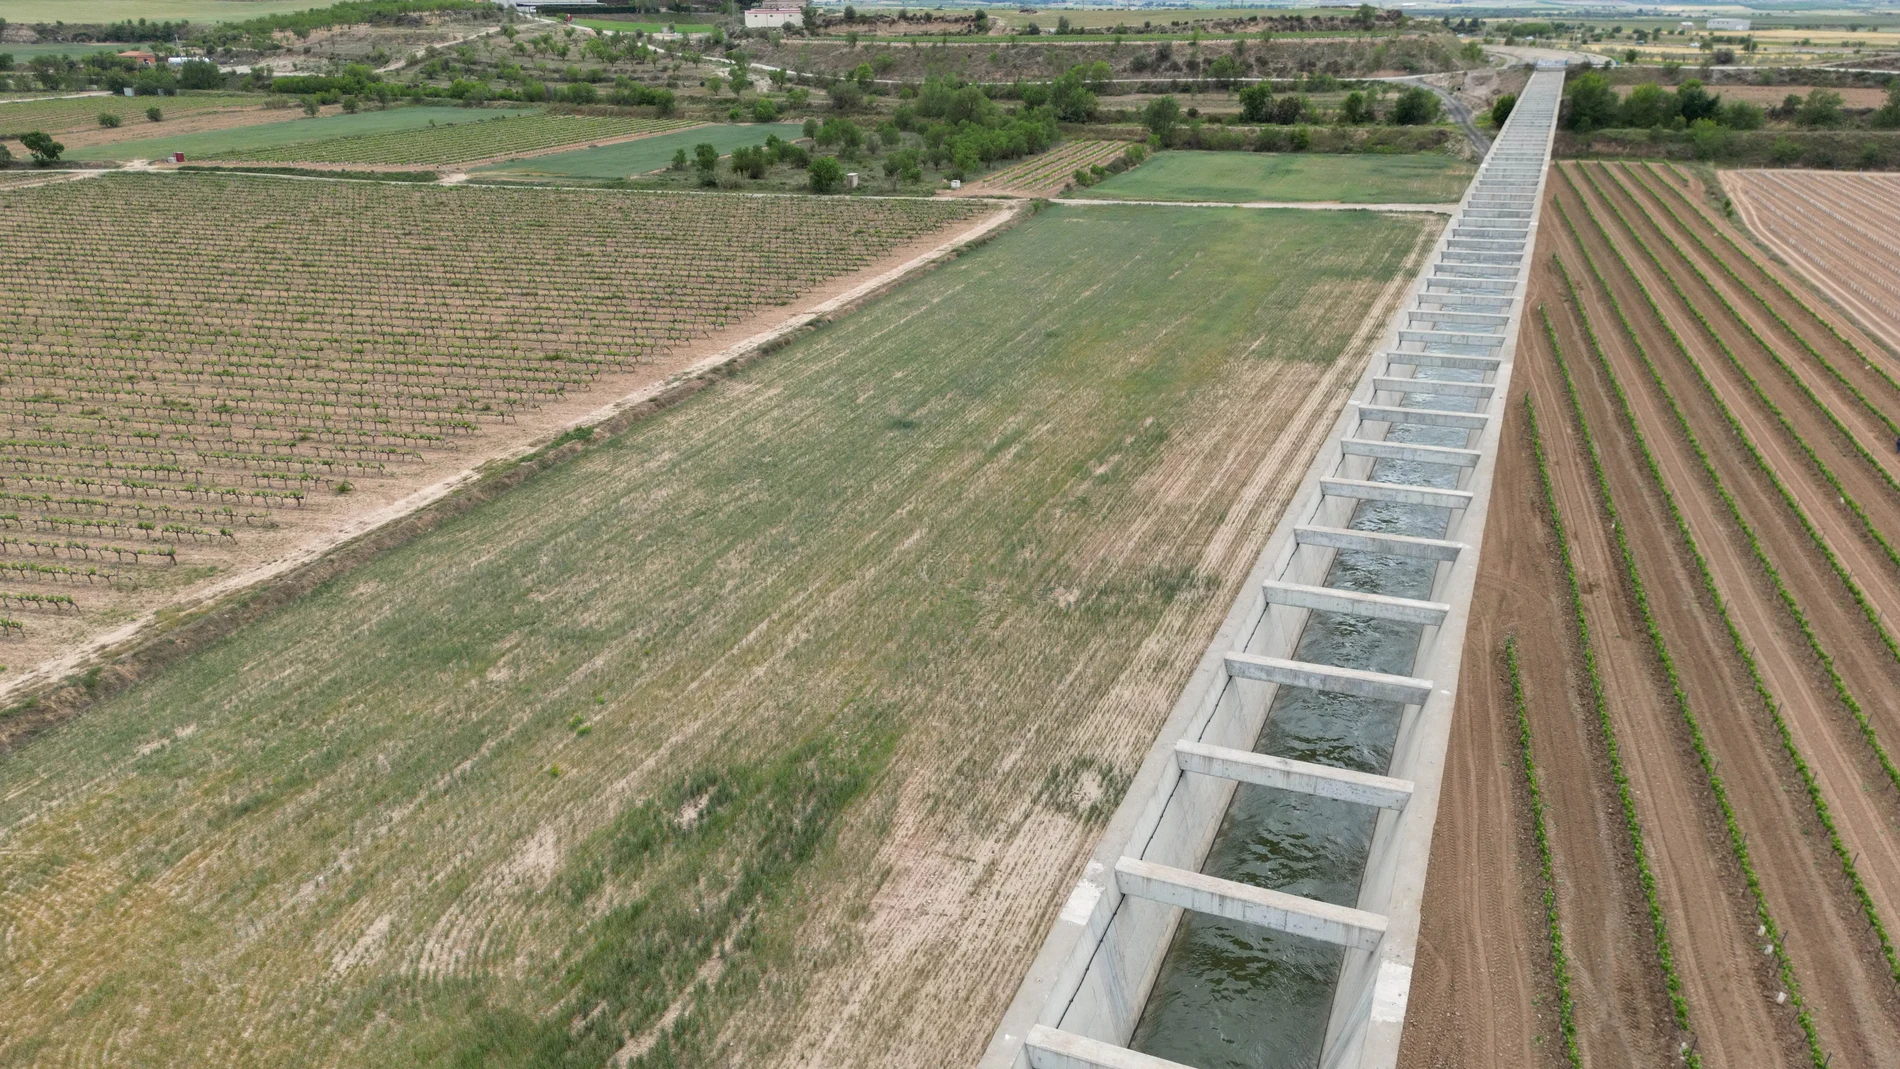 La Comunidad General de Regantes del Canal Segarra-Garrigues, en Lleida, ha decidido cerrar el suministro de agua desde hoy y hasta el martes, 2 de mayo, debido a "la situación excepcional de sequía que vive" Cataluña y para "salvar los árboles" frutales con un mínimo de subsistencia.